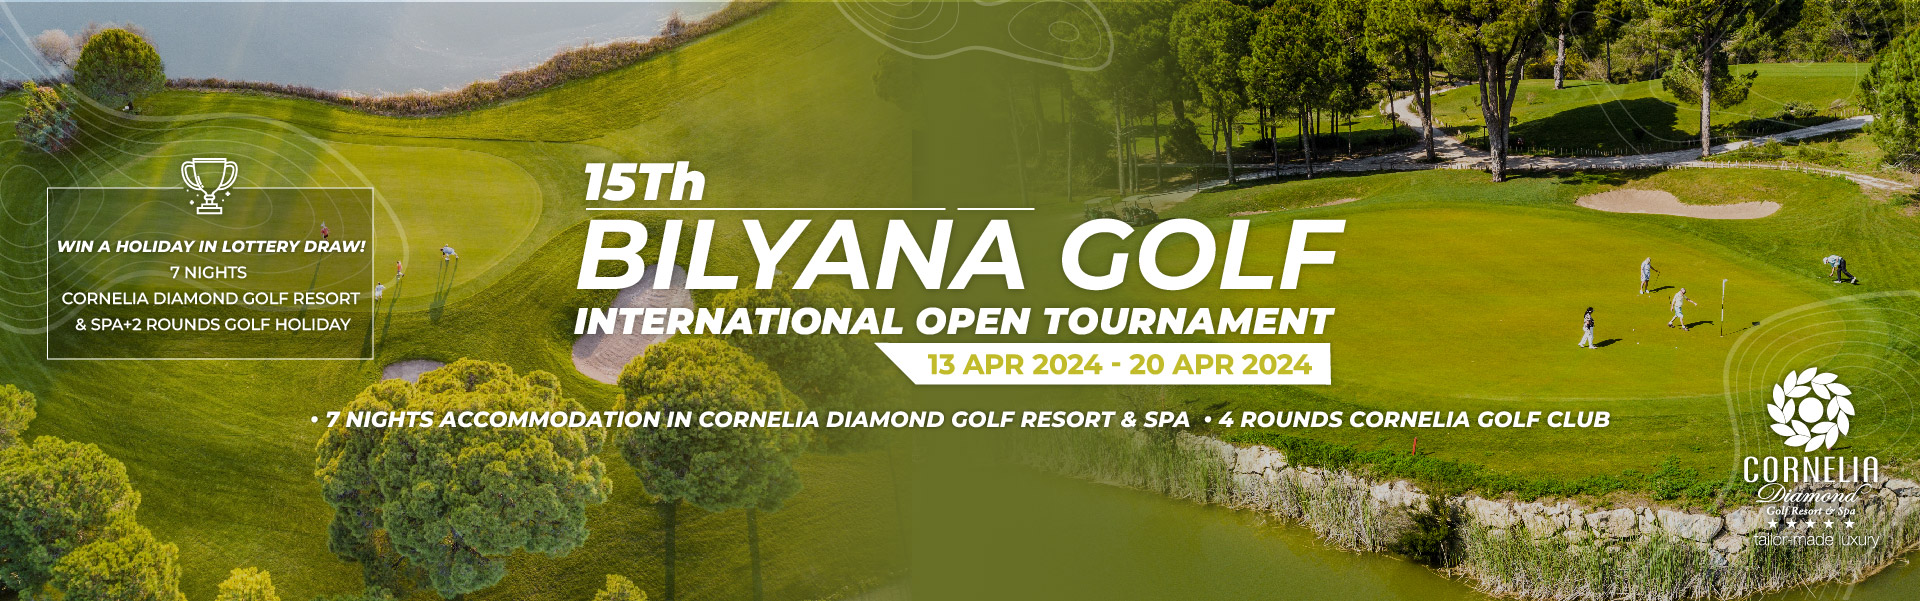 Bilyana Golf - 15Th BILYANA GOLF INTERNATIONAL OPEN TURNAJ